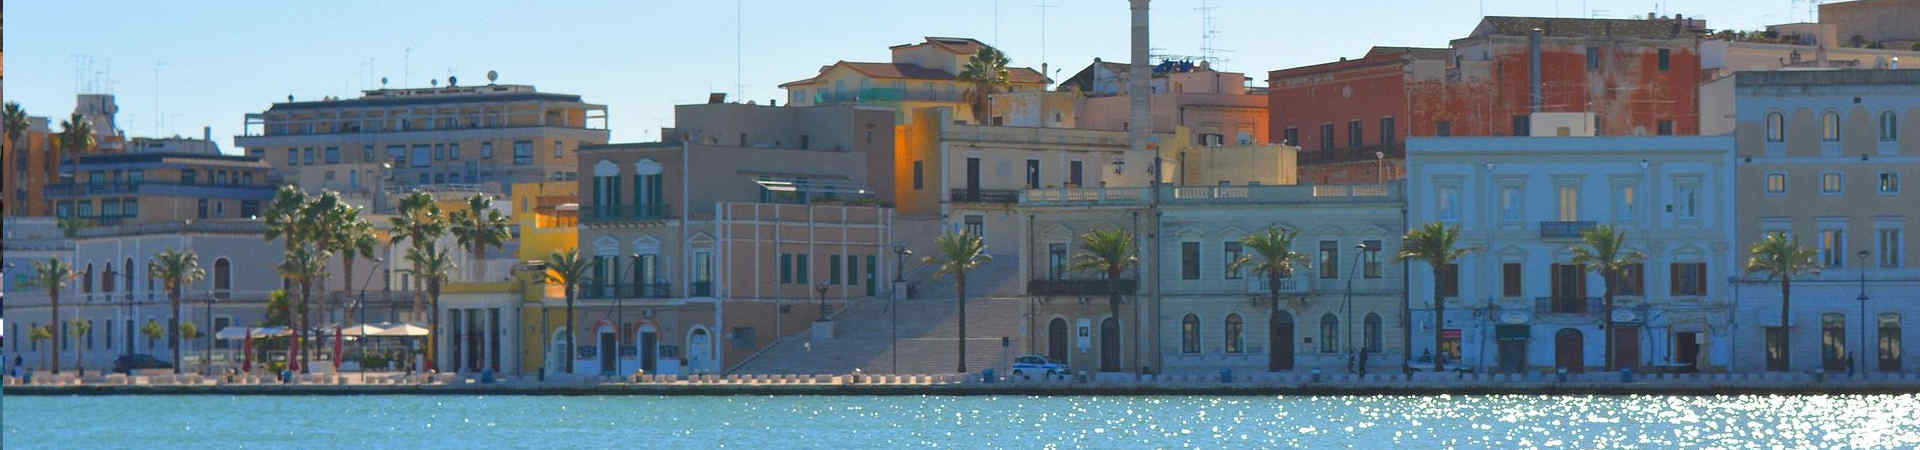 Imagen recurso del puerto de destino Brindisi para la ruta en ferry Patras - Brindisi